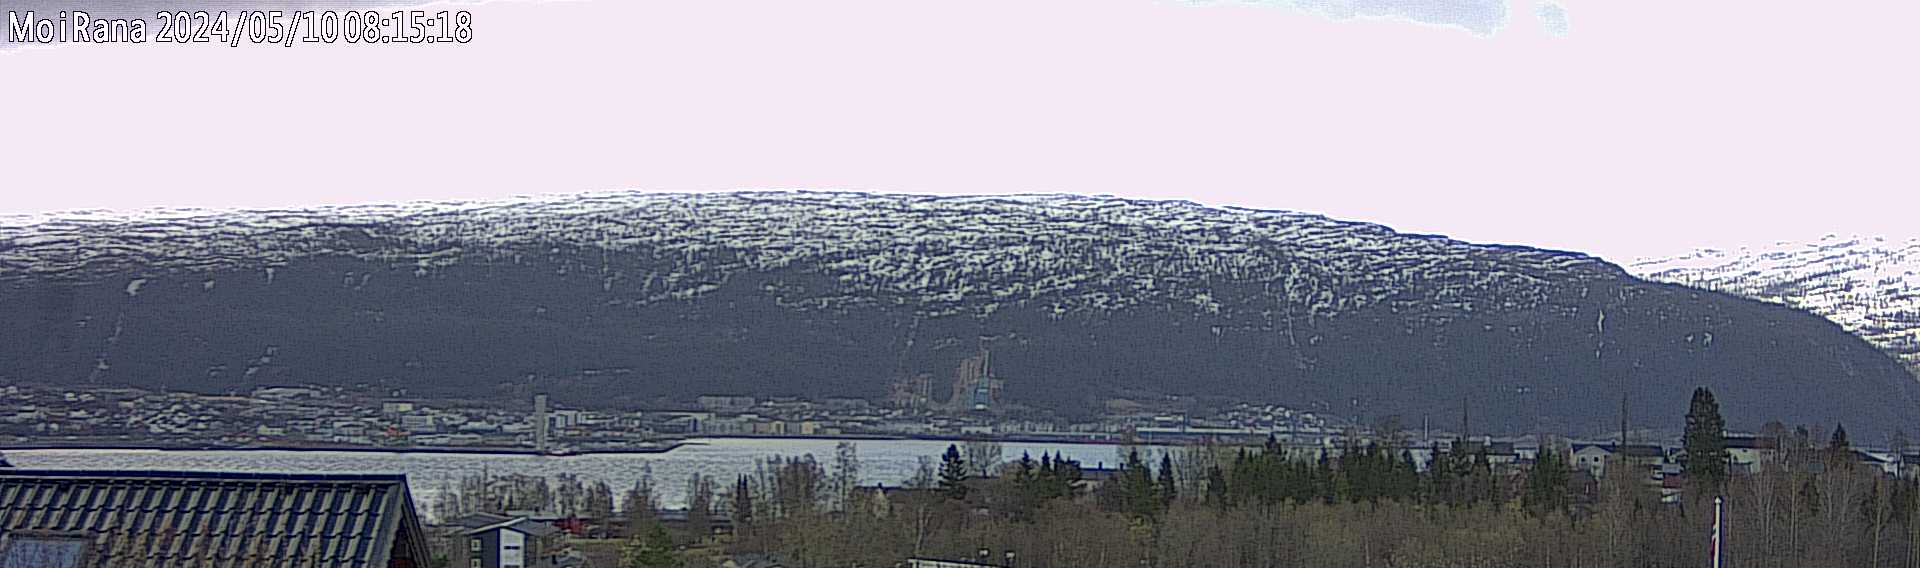 Webcam Mo i Rana, Rana, Nordland, Norwegen